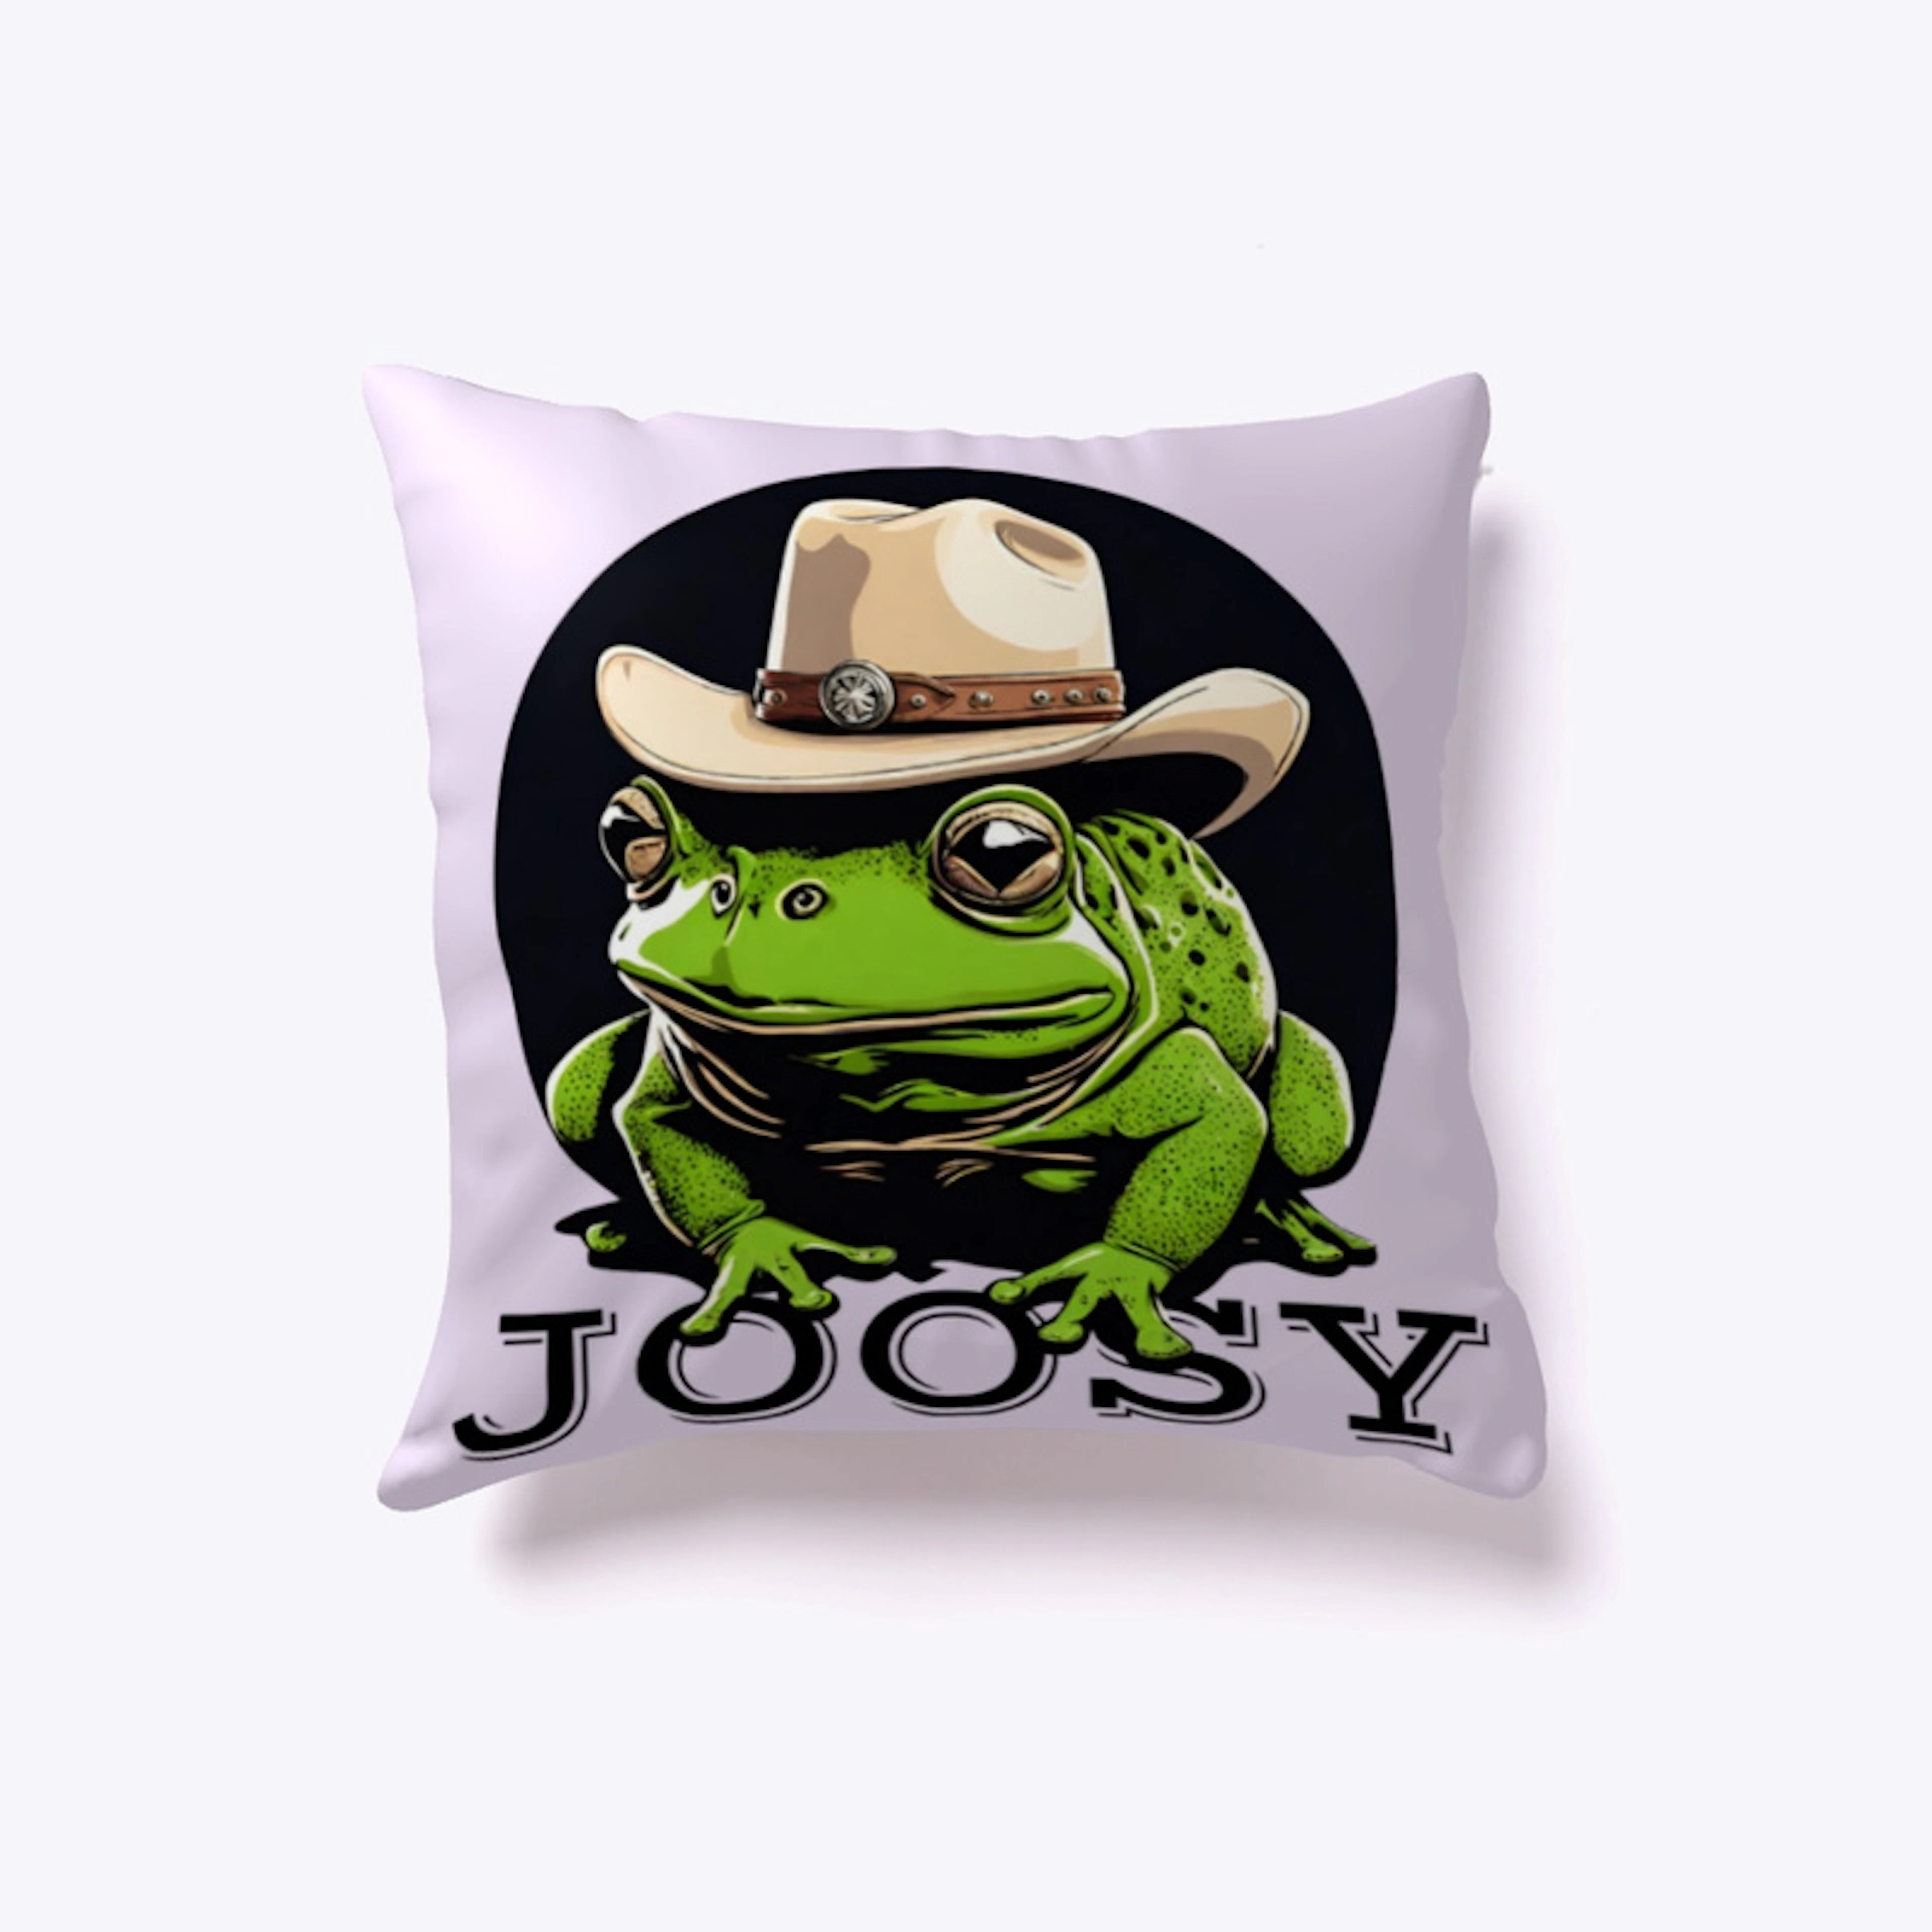 Joosy The frog - Realistic